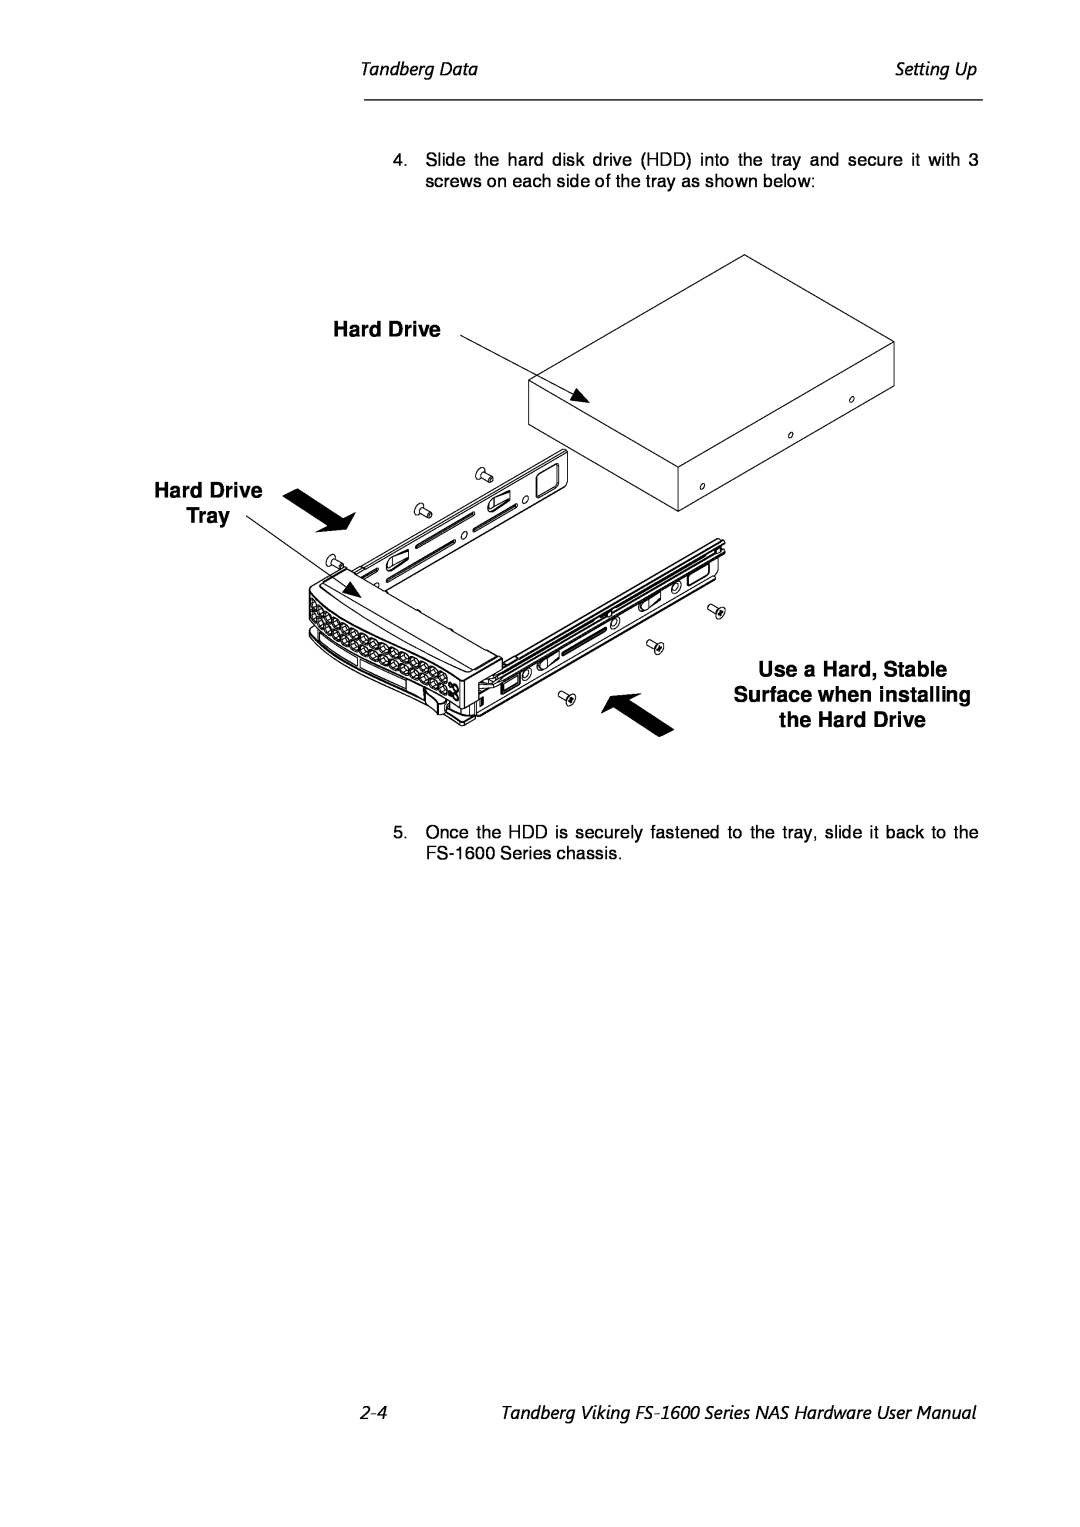 Tandberg Data FS-1610, FS-1600 Hard Drive Hard Drive Tray Use a Hard, Stable, Surface when installing the Hard Drive 